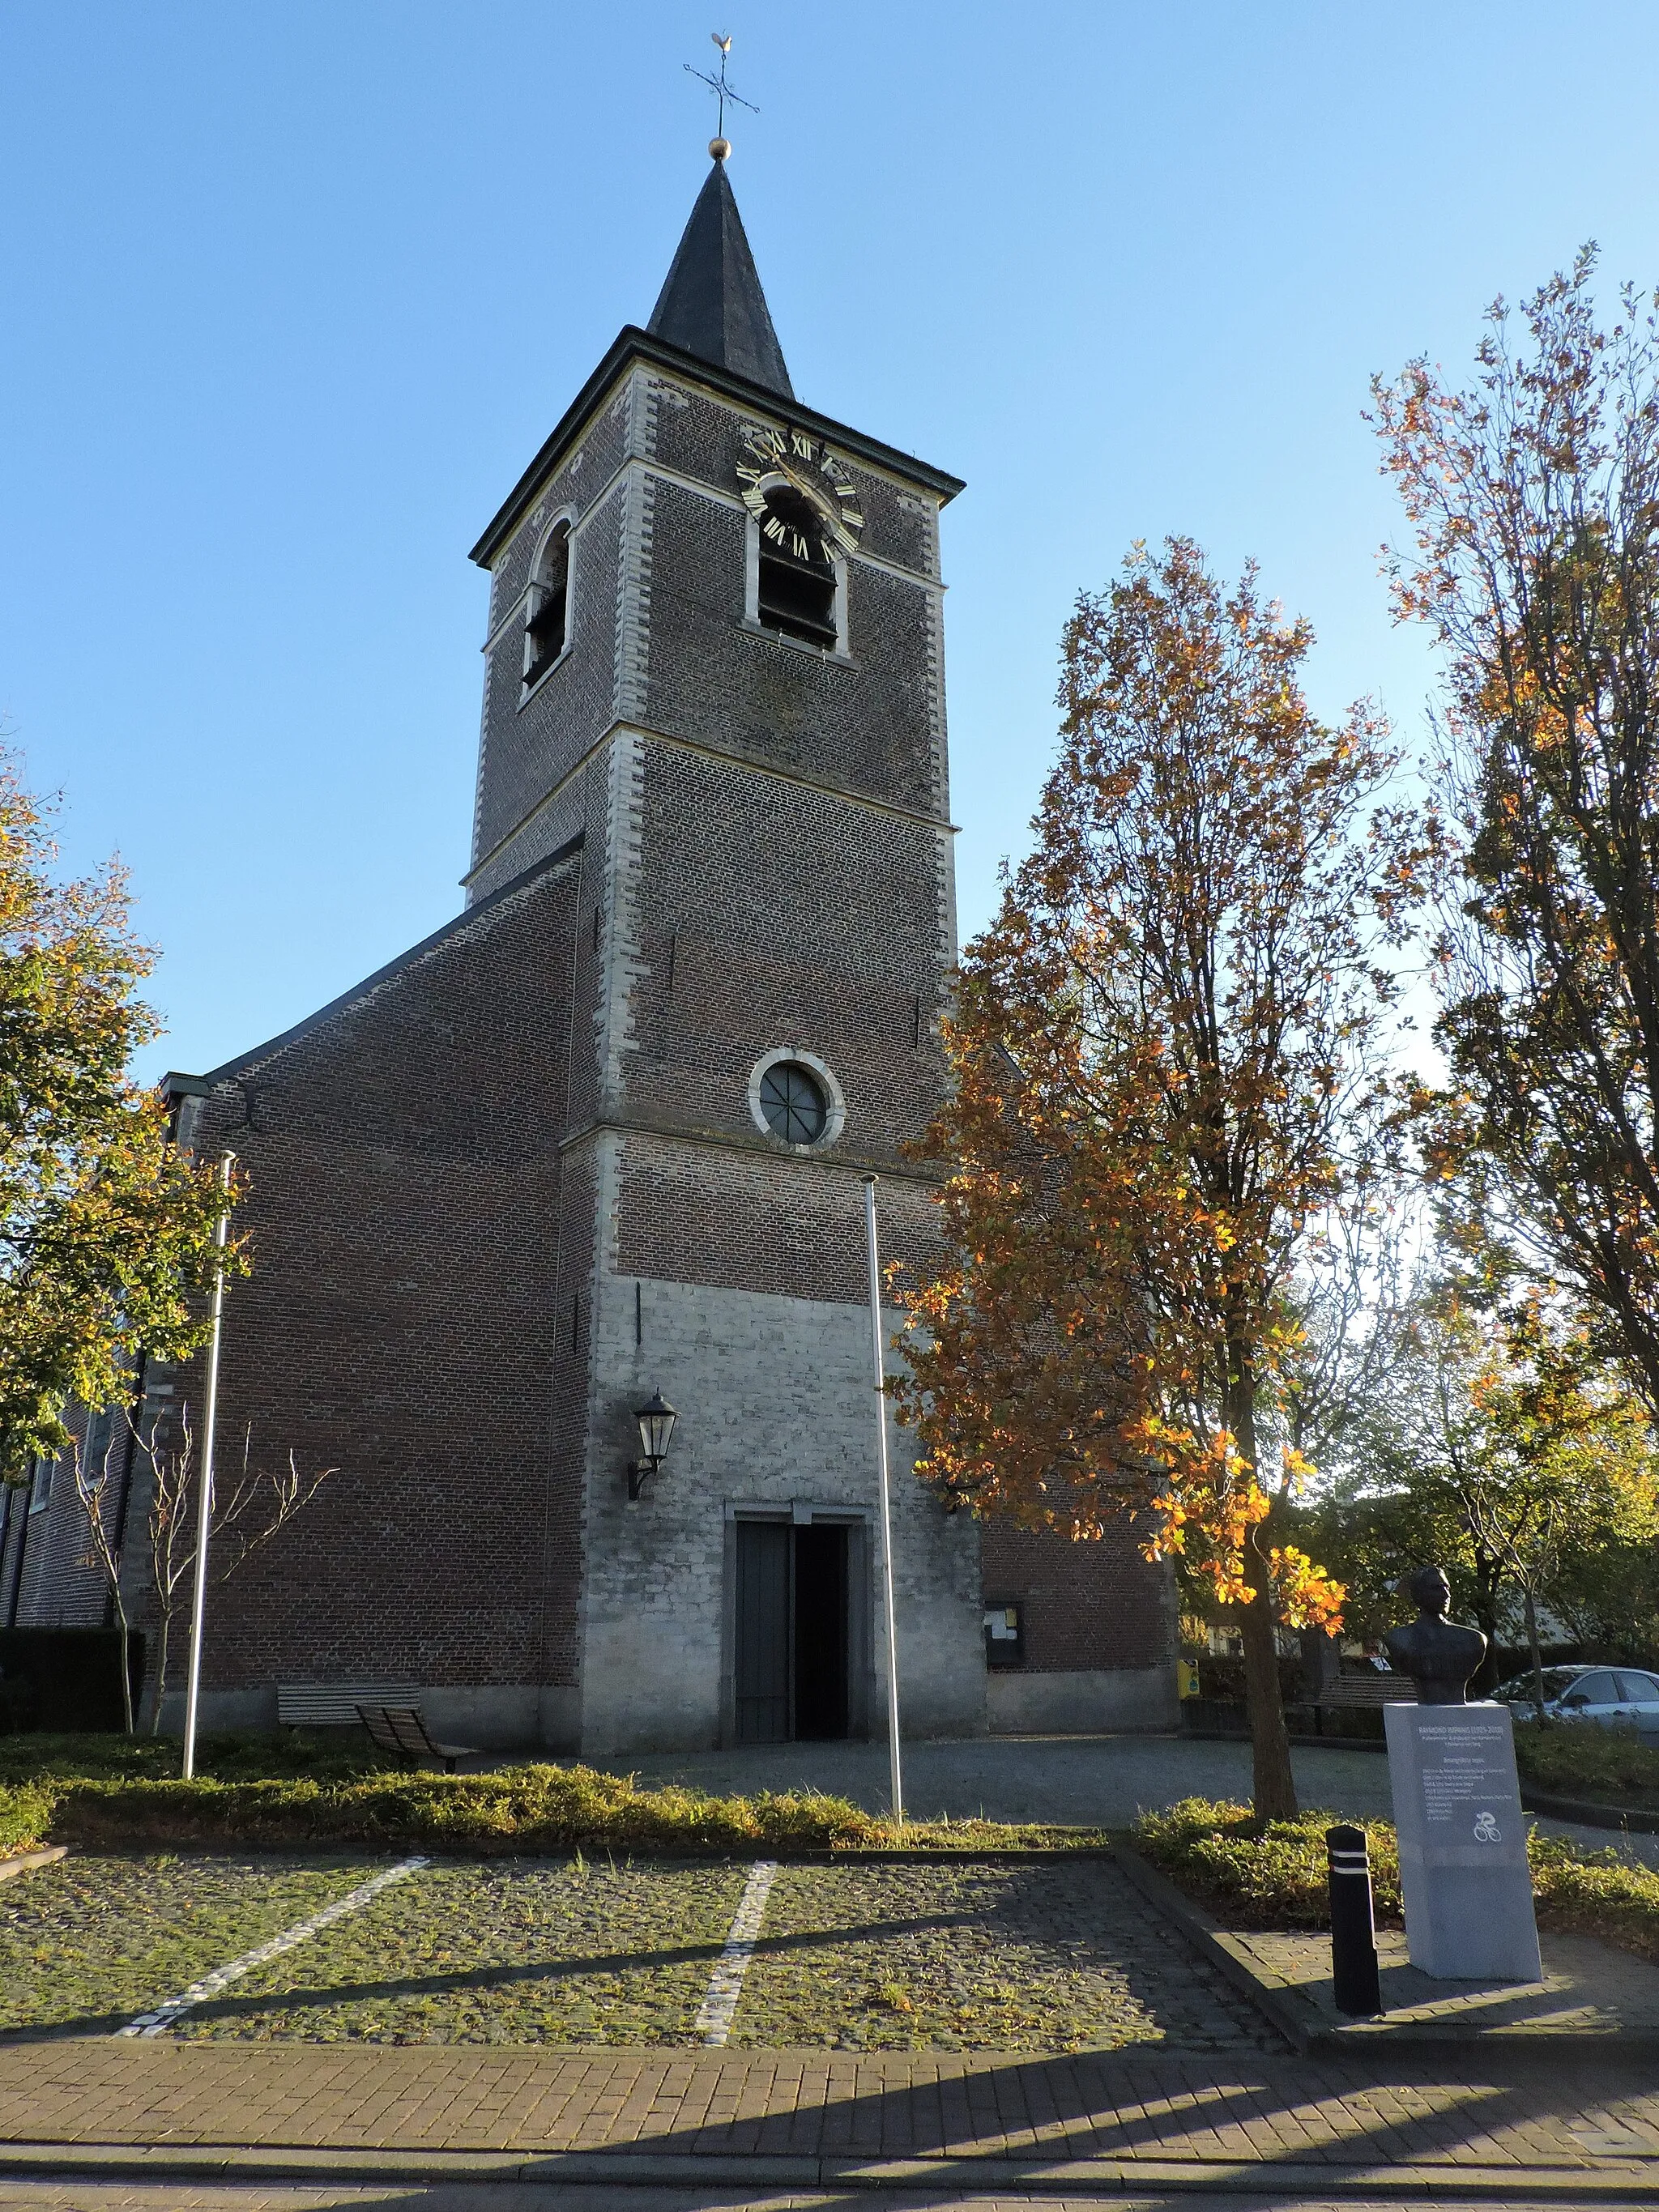 Photo showing: Dit is een foto van de Sint-Servatiuskerk in Berg, een deelgemeente van Kampenhout. Bij de kerk staat er een standbeeld van de wielrenner Raymond Impanis.